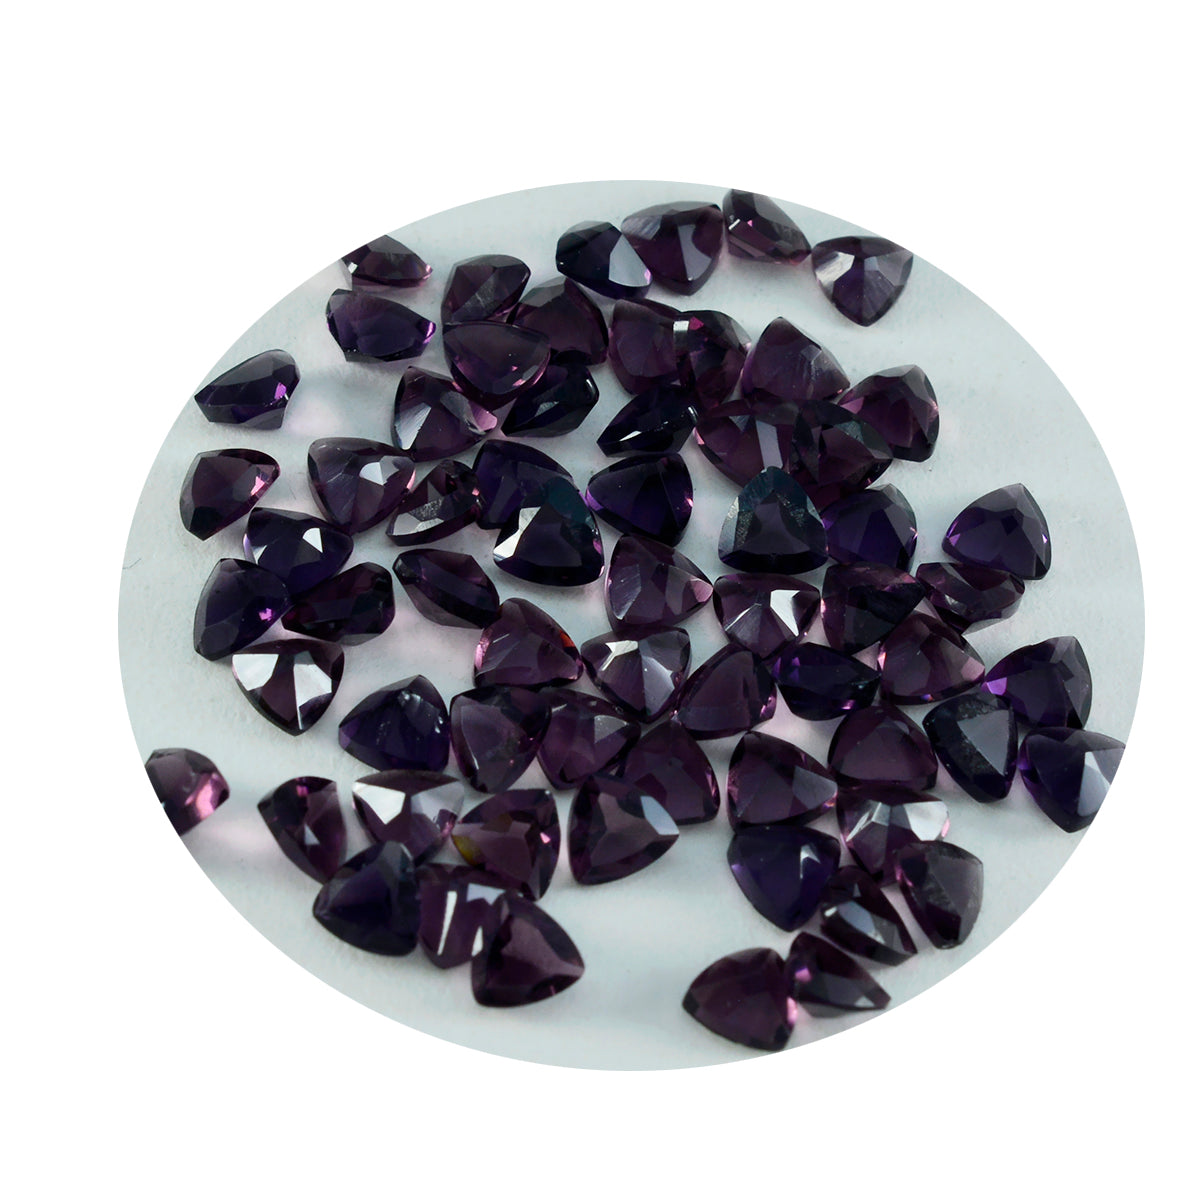 riyogems 1шт фиолетовый аметист cz граненый 4x4 мм форма триллион + 1 драгоценный камень качества